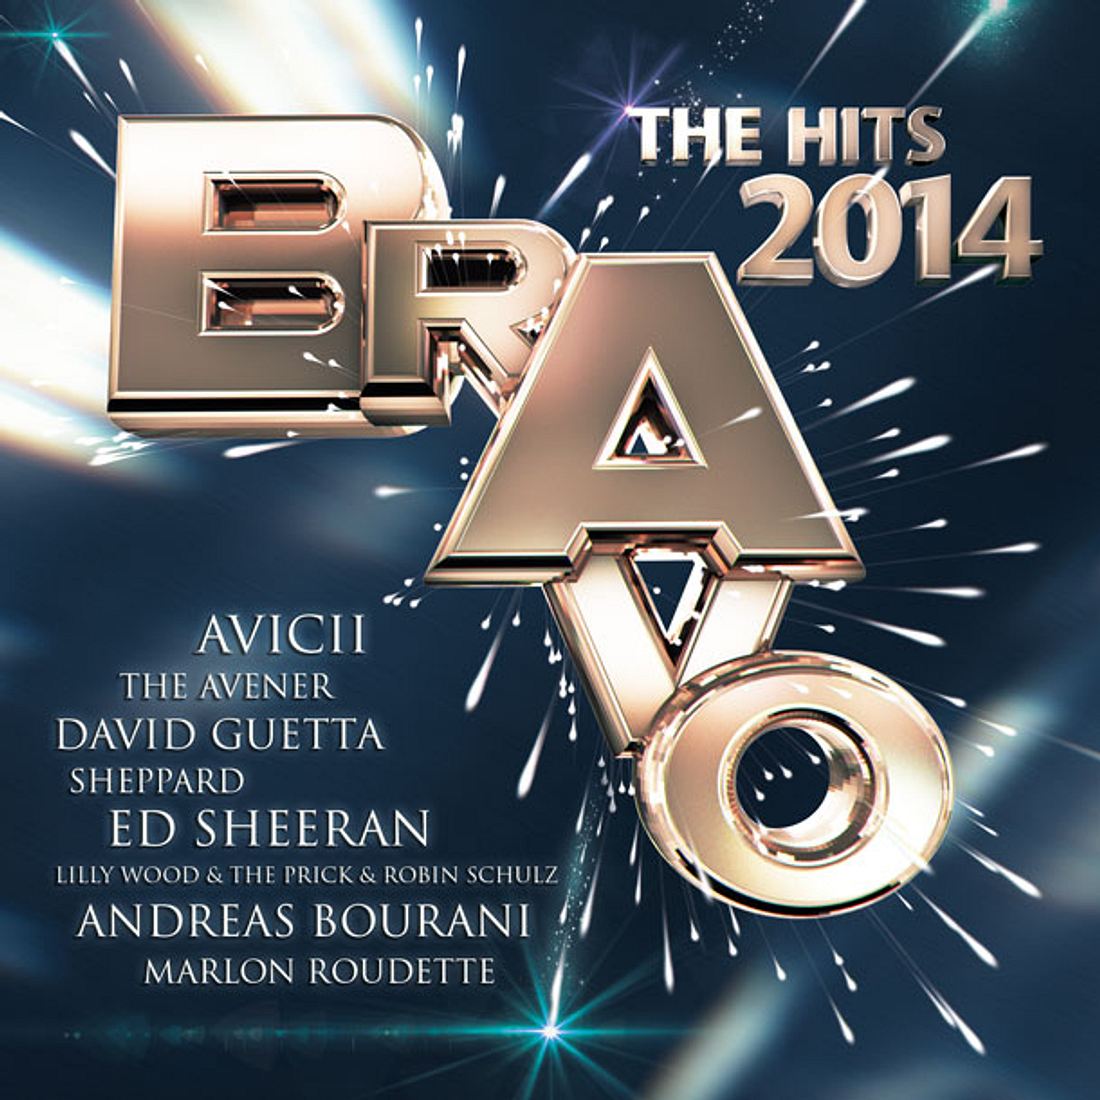 BRAVO The Hits 2014 ist da!